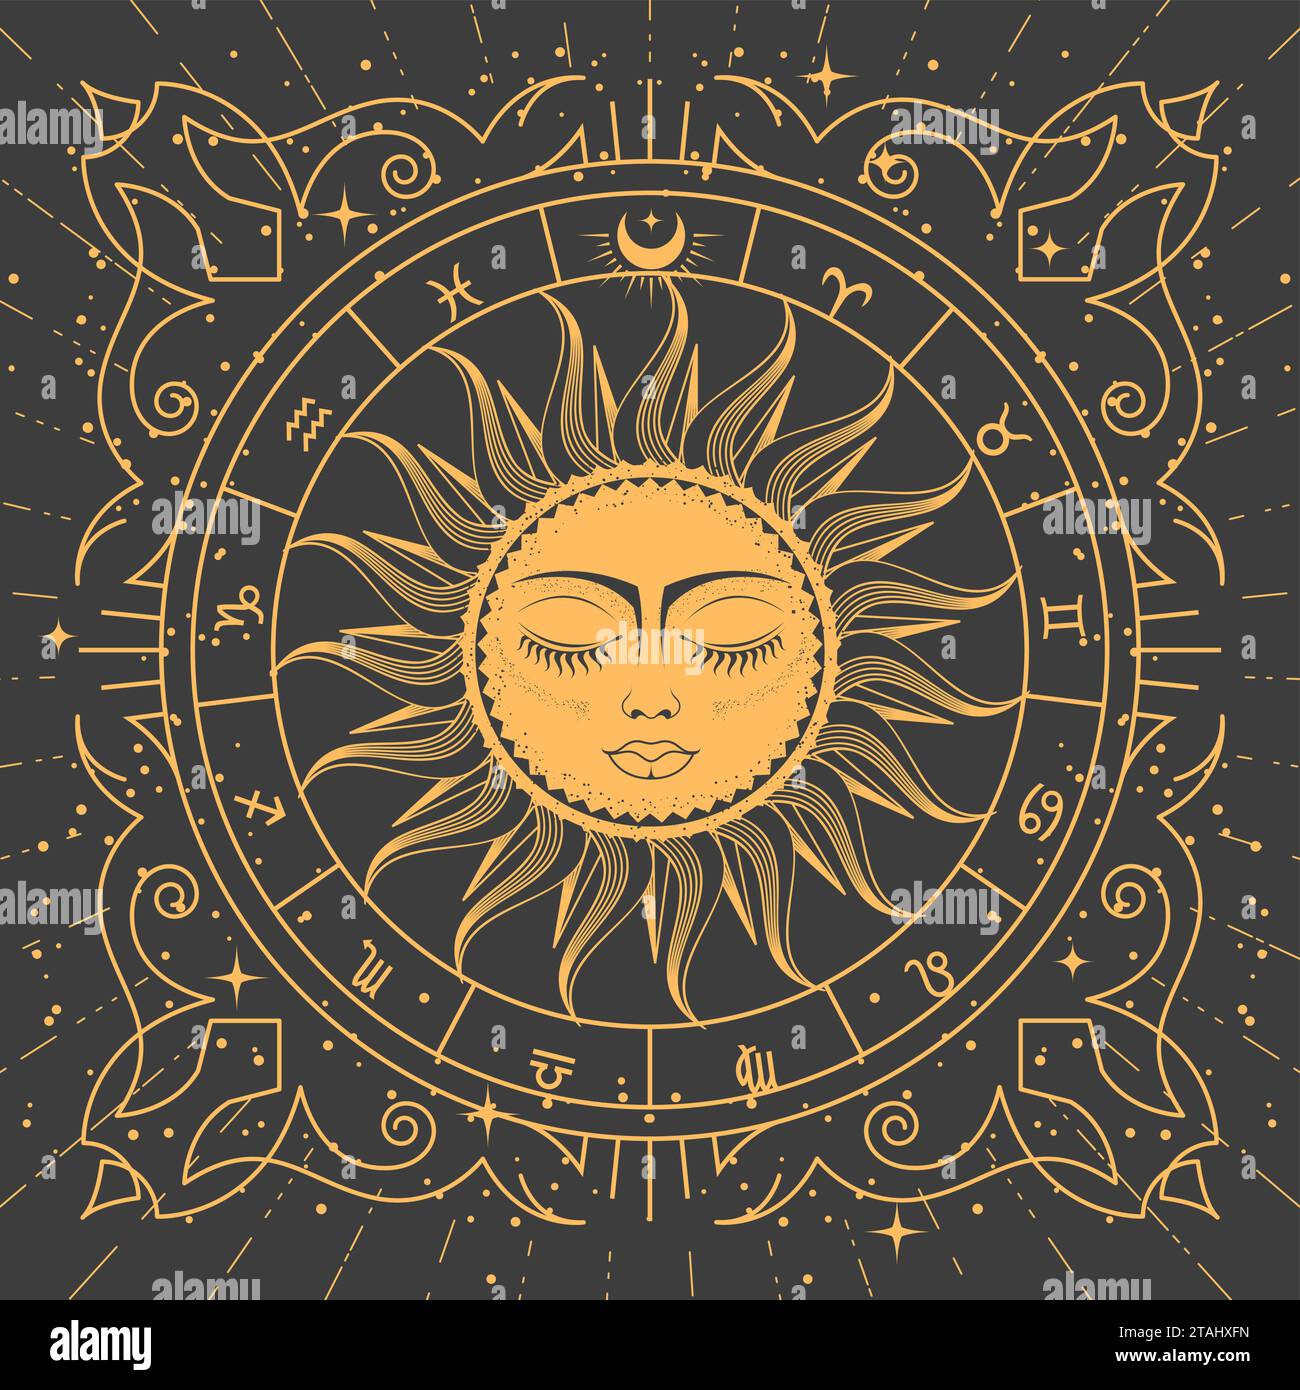 Ornamentaler Tarot-Rahmen mit magischer Sonne, Tierkreiszeichen und esoterischen Mustern, mystischem Rahmen, Vektor Stock Vektor